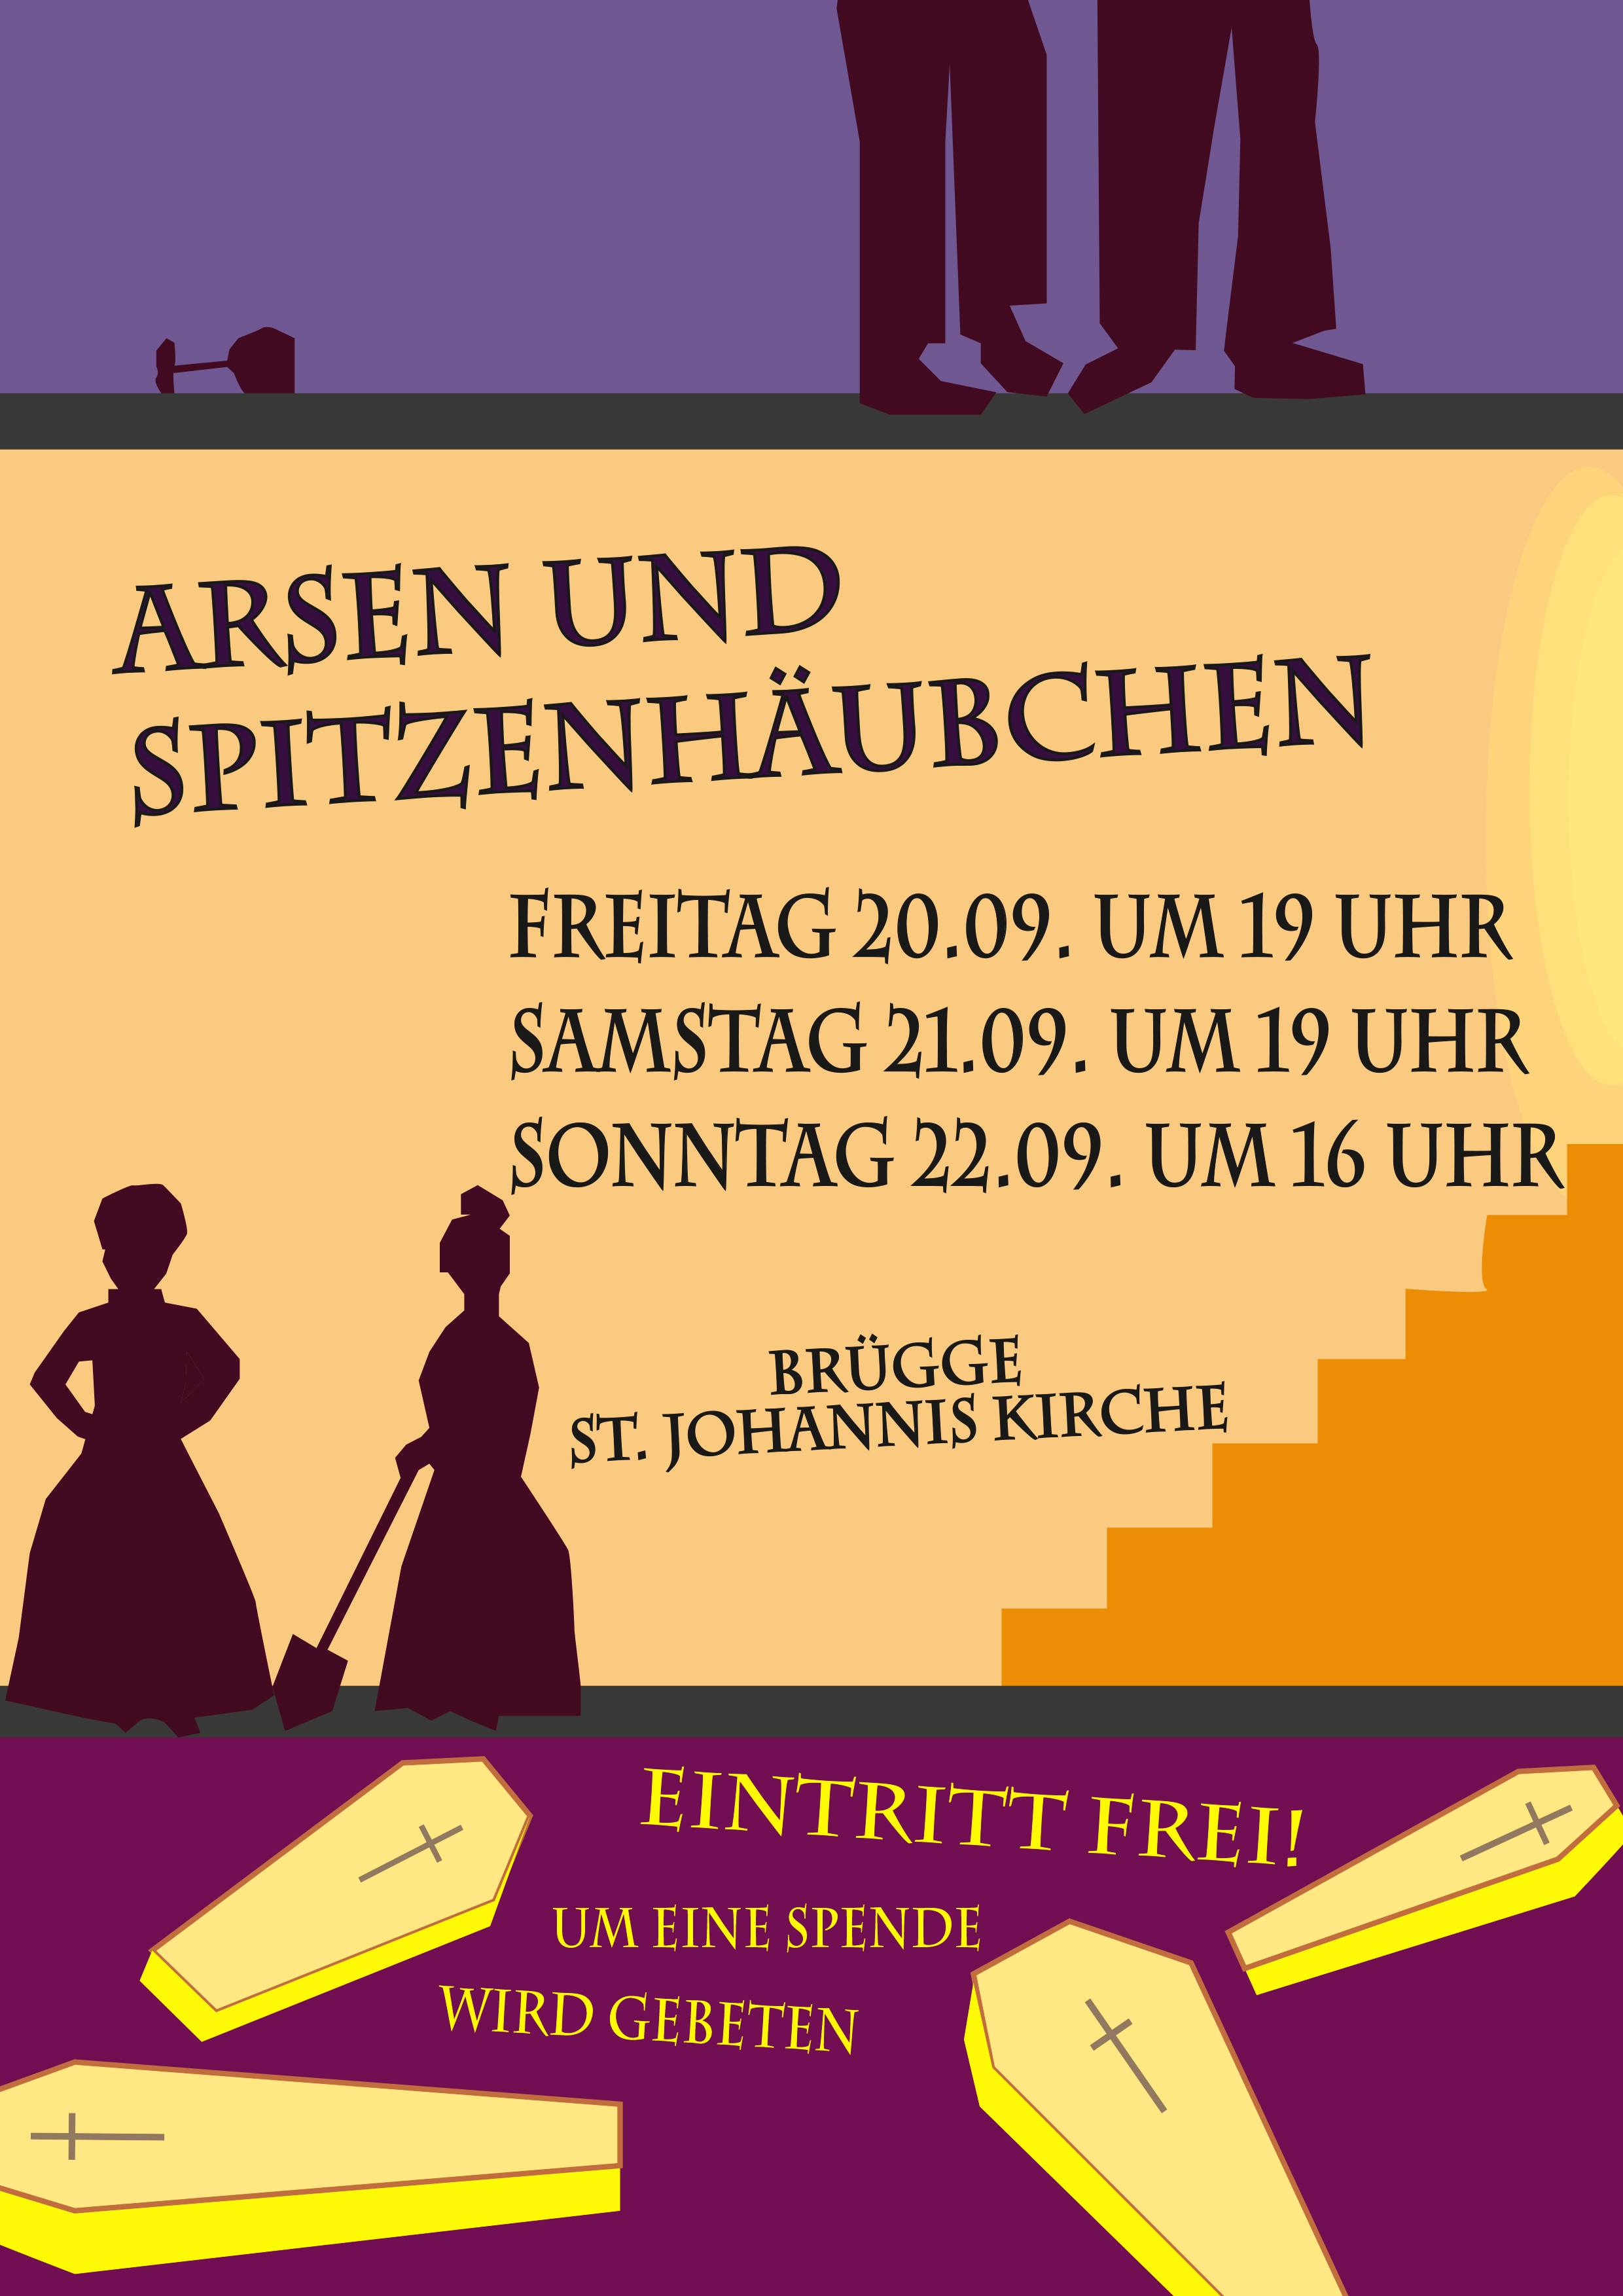 Plakat Arsen und Spitzenhaubchen 2019 08 27